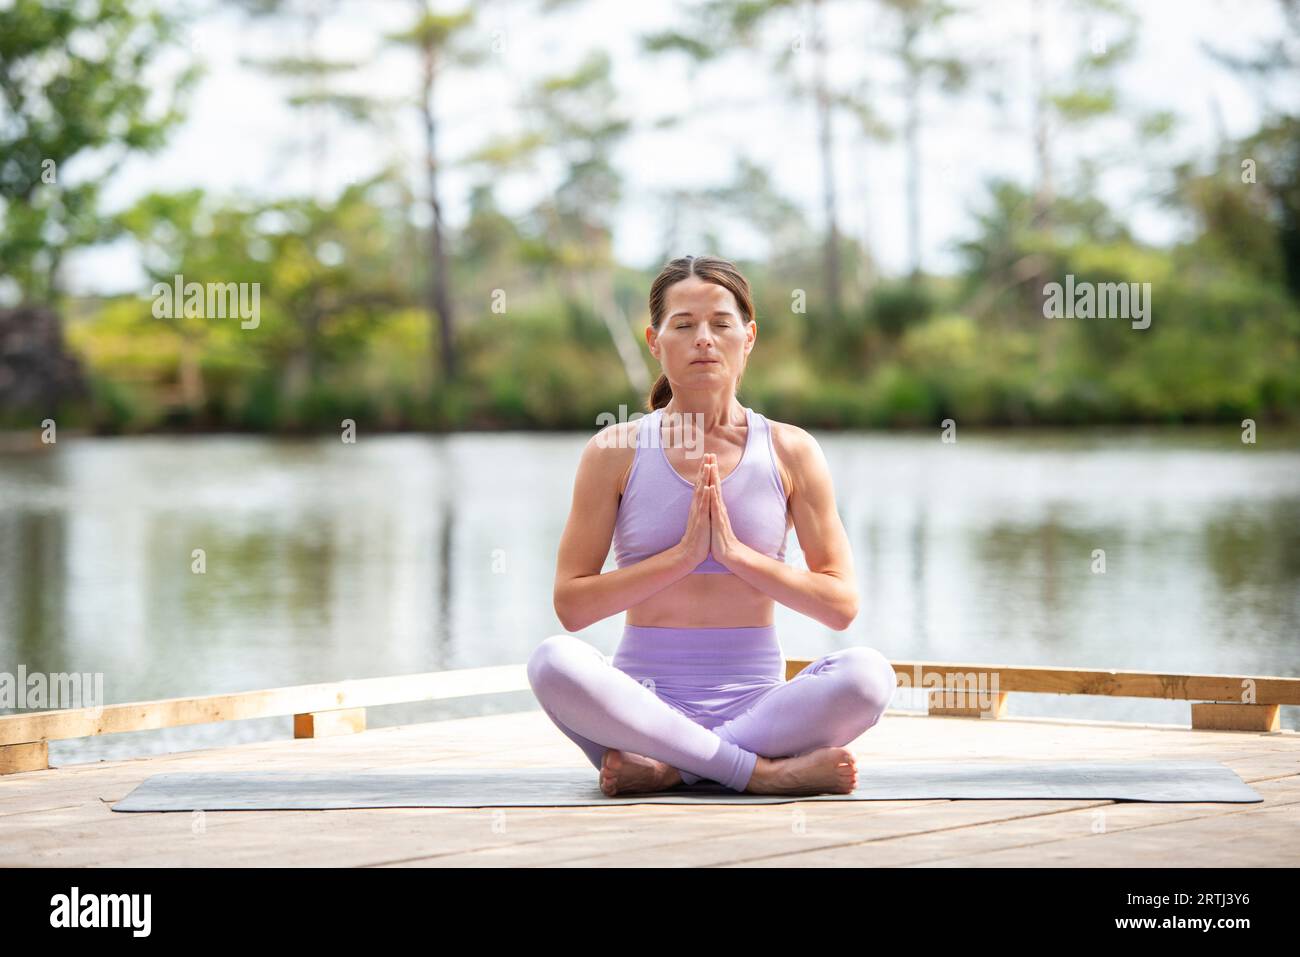 Mujer deportiva practicando yoga en un embarcadero junto a un lago, sentado meditando, parte de la serie. Foto de stock